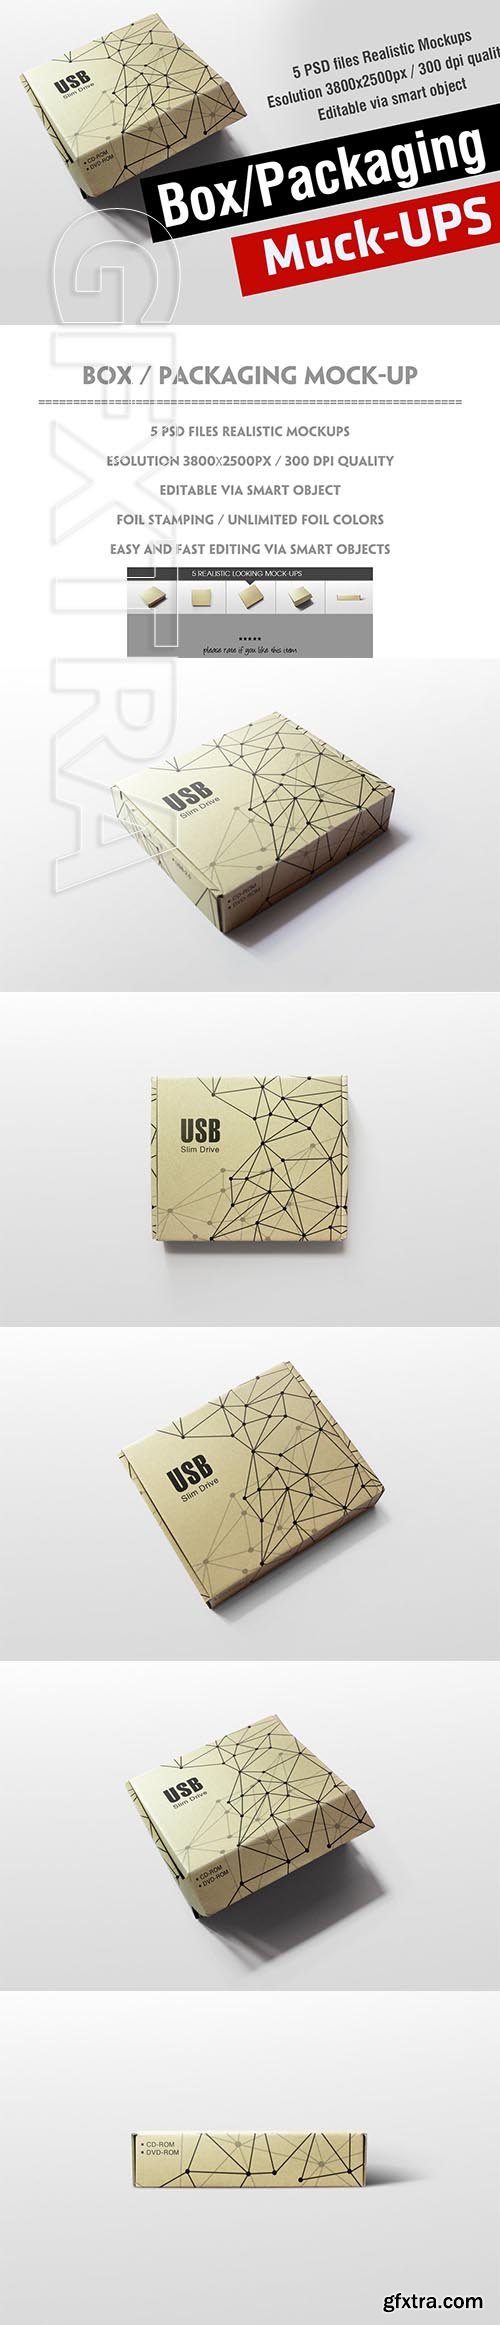 CreativeMarket - Box Packaging Mock-Up 3751928